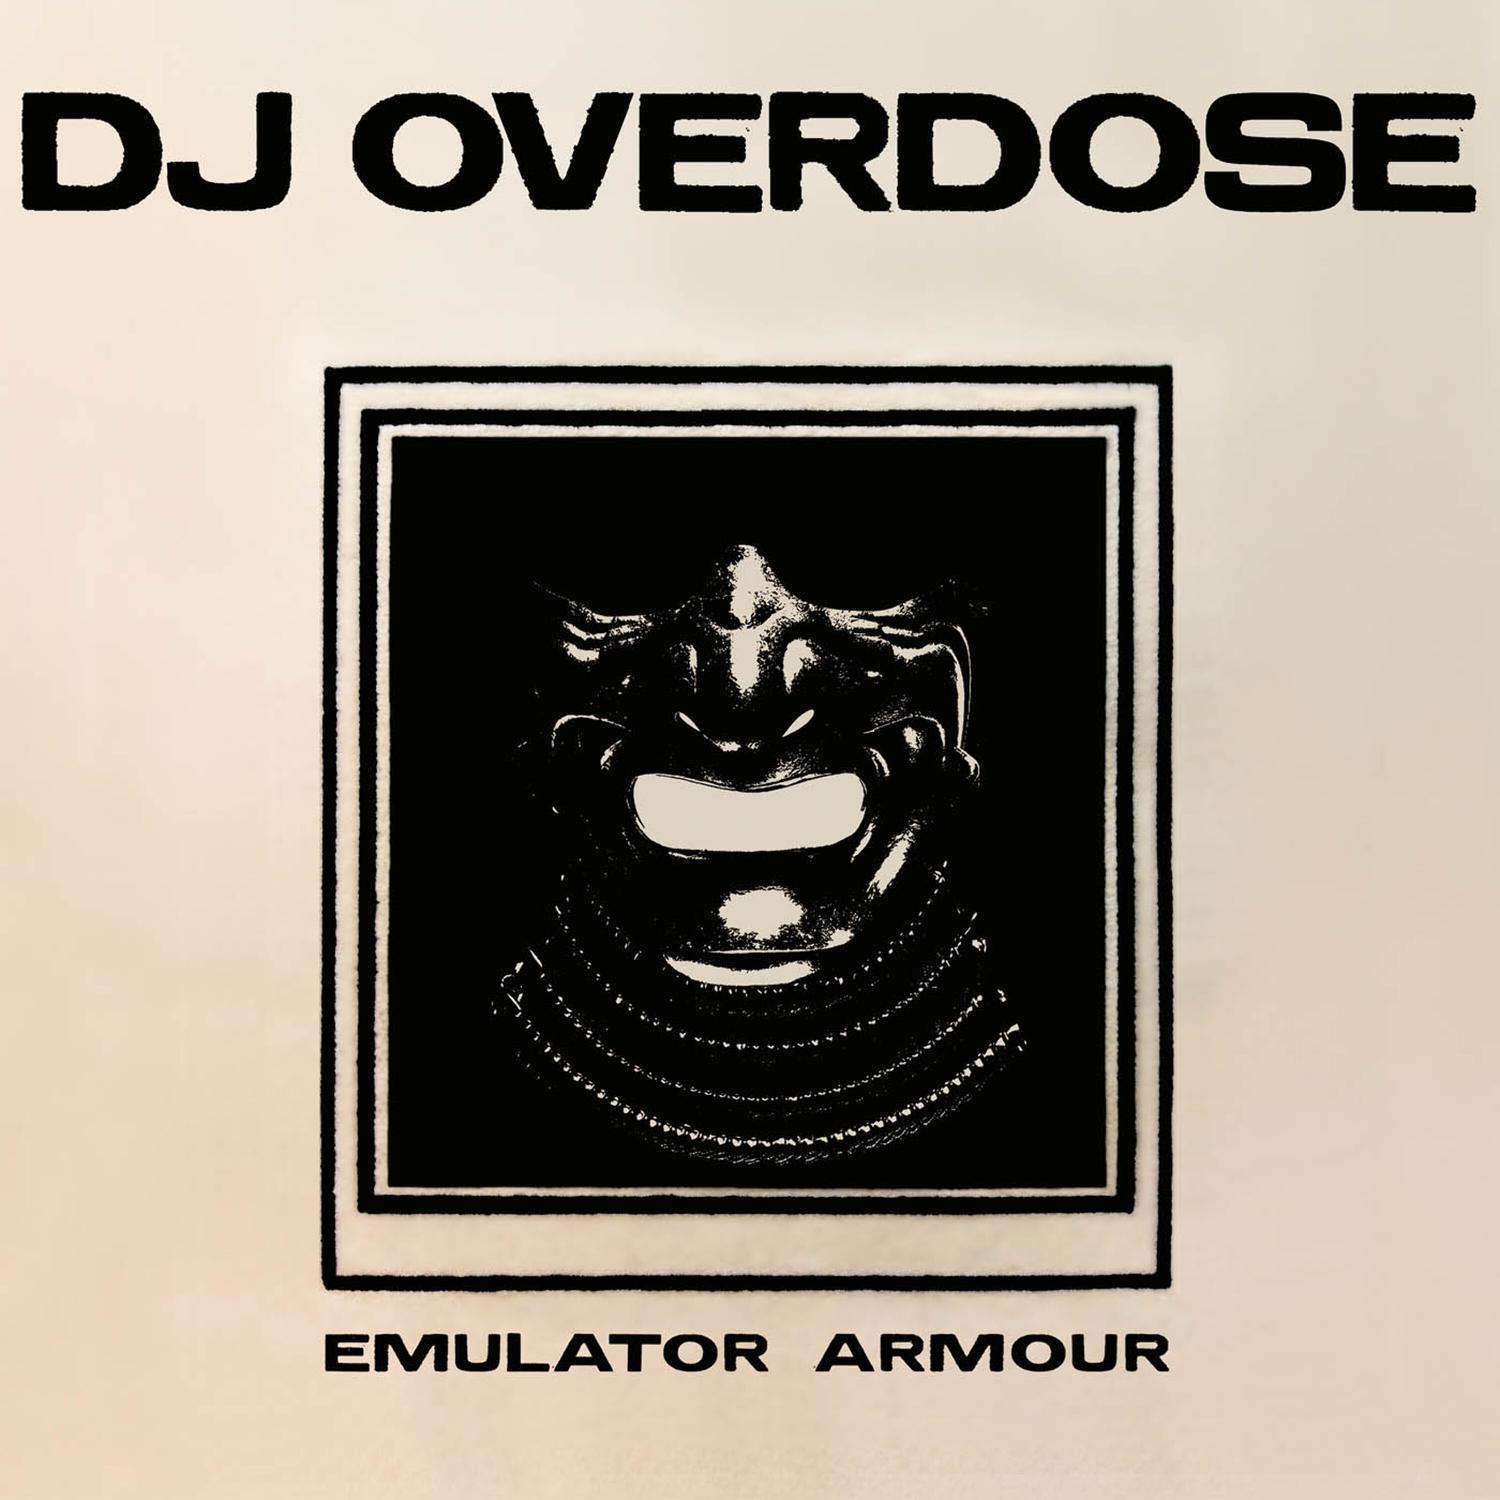 DJ Overdose - What Do I Know